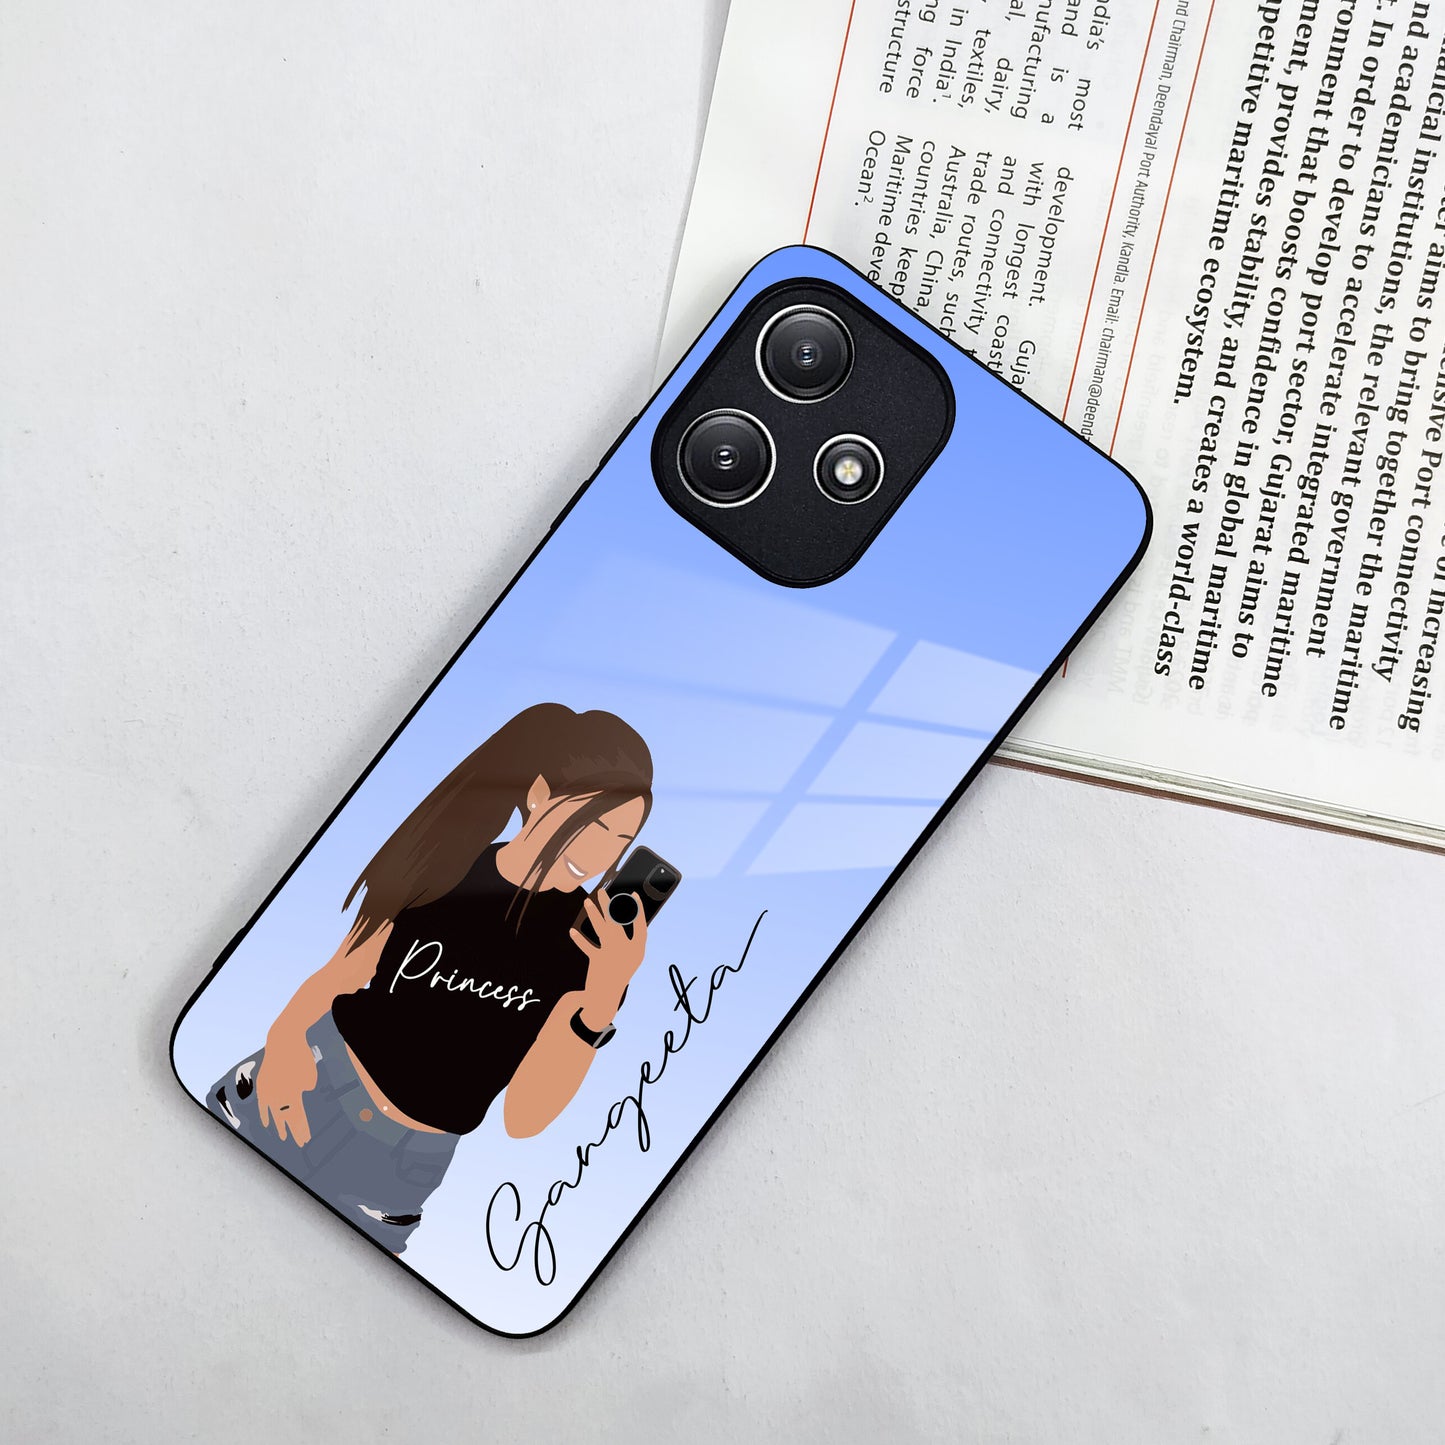 Mobile Girl Glass Case Cover For Redmi/Xiaomi